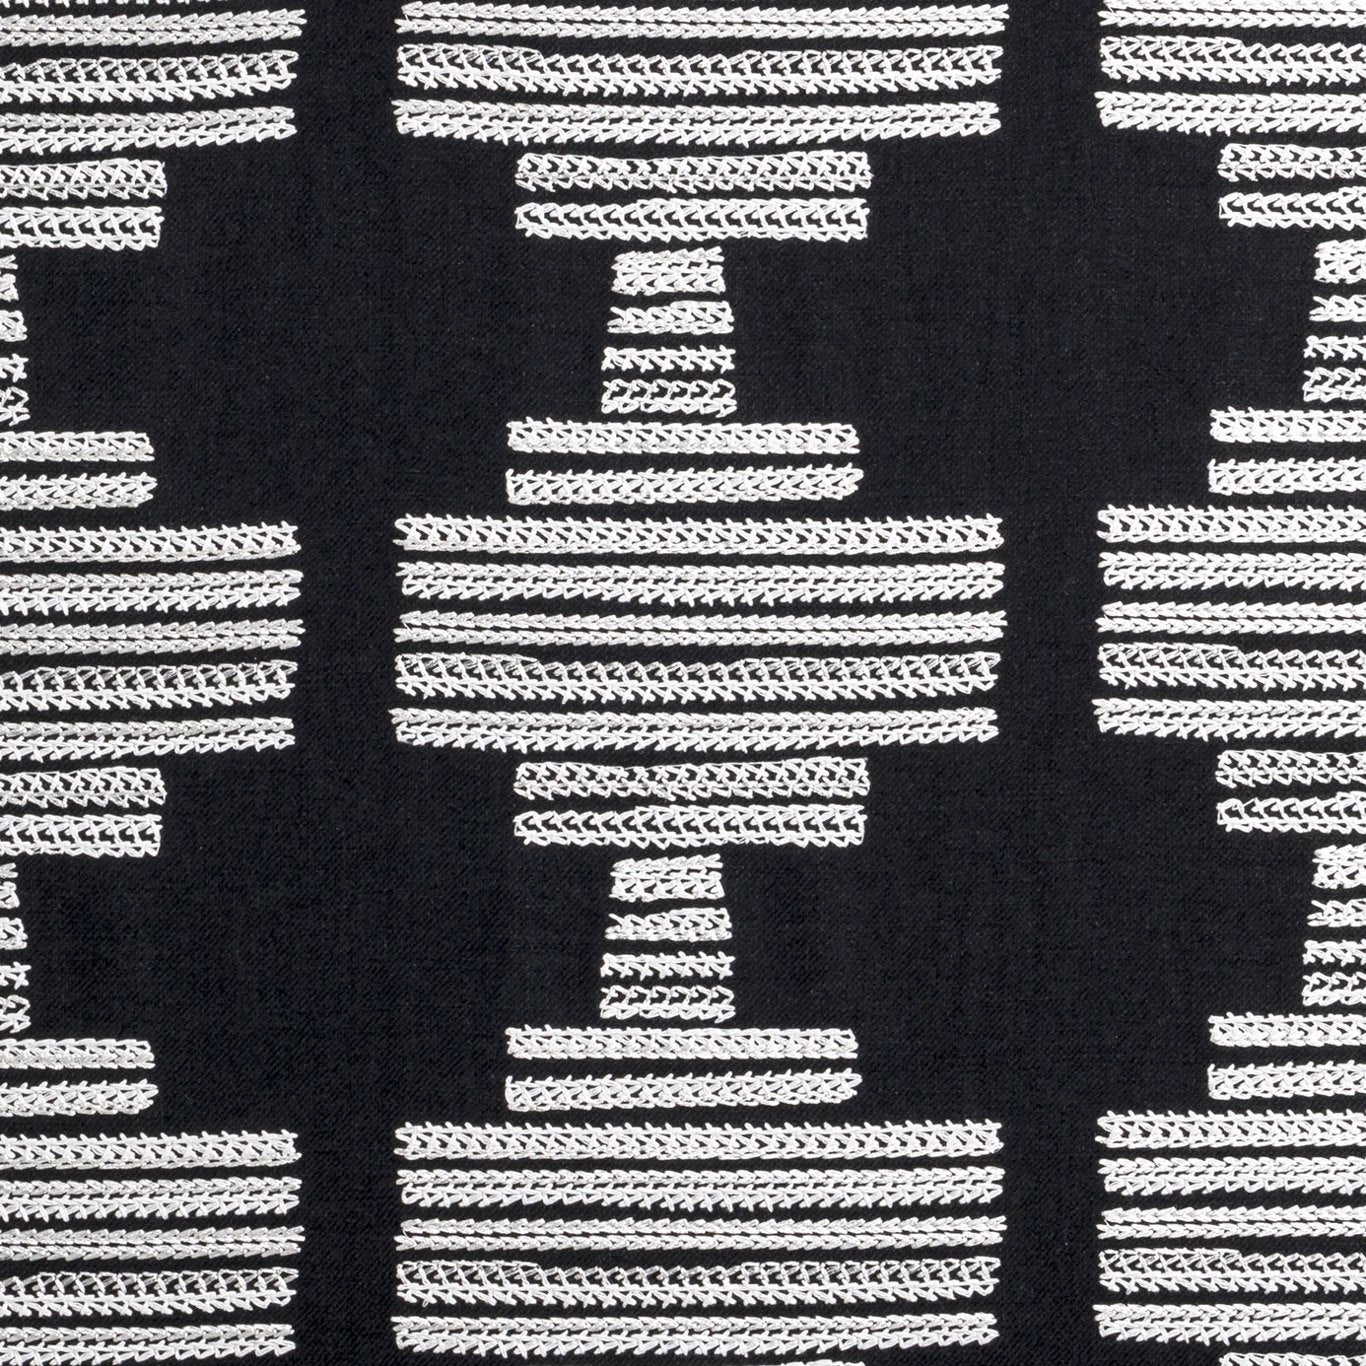 Bw1010 Fabric by Clarke & Clarke - F0882/01 - Black/White